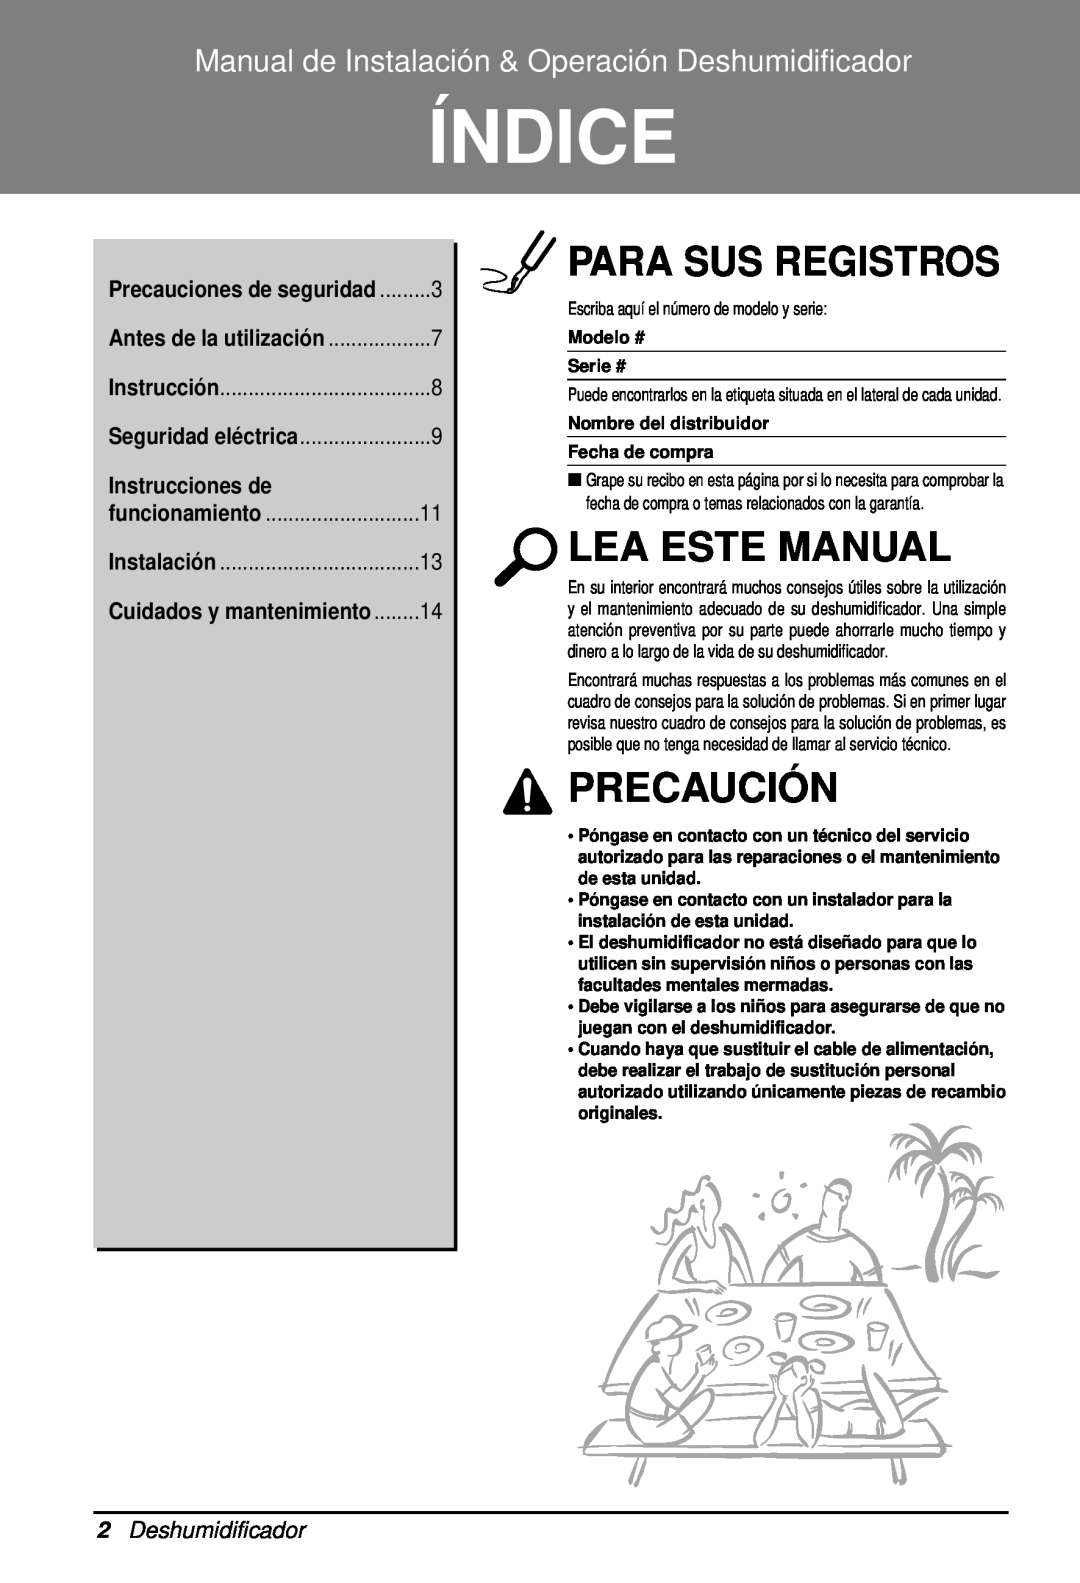 Heat Controller BHD-301 manual Índice, Para Sus Registros, Lea Este Manual, Precaución, 2Deshumidificador 